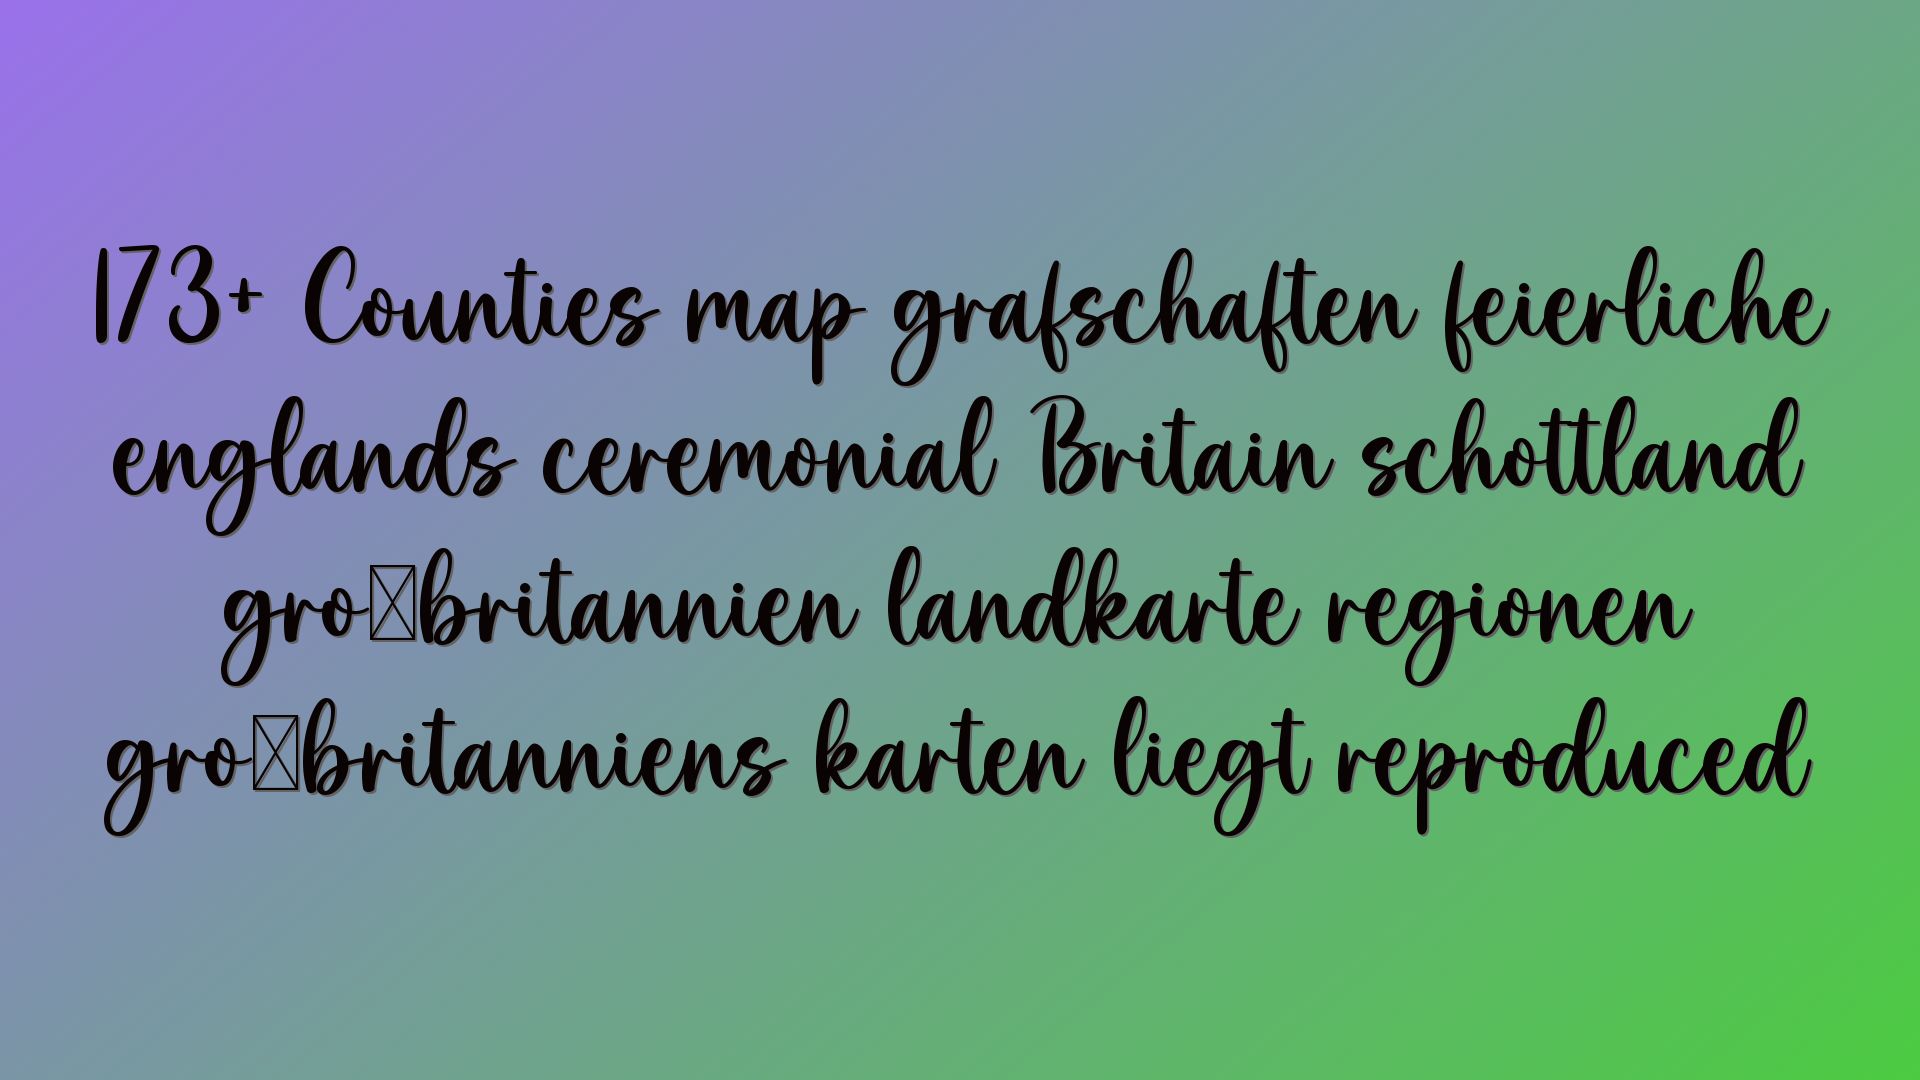 173+ Counties map grafschaften feierliche englands ceremonial Britain schottland großbritannien landkarte regionen großbritanniens karten liegt reproduced